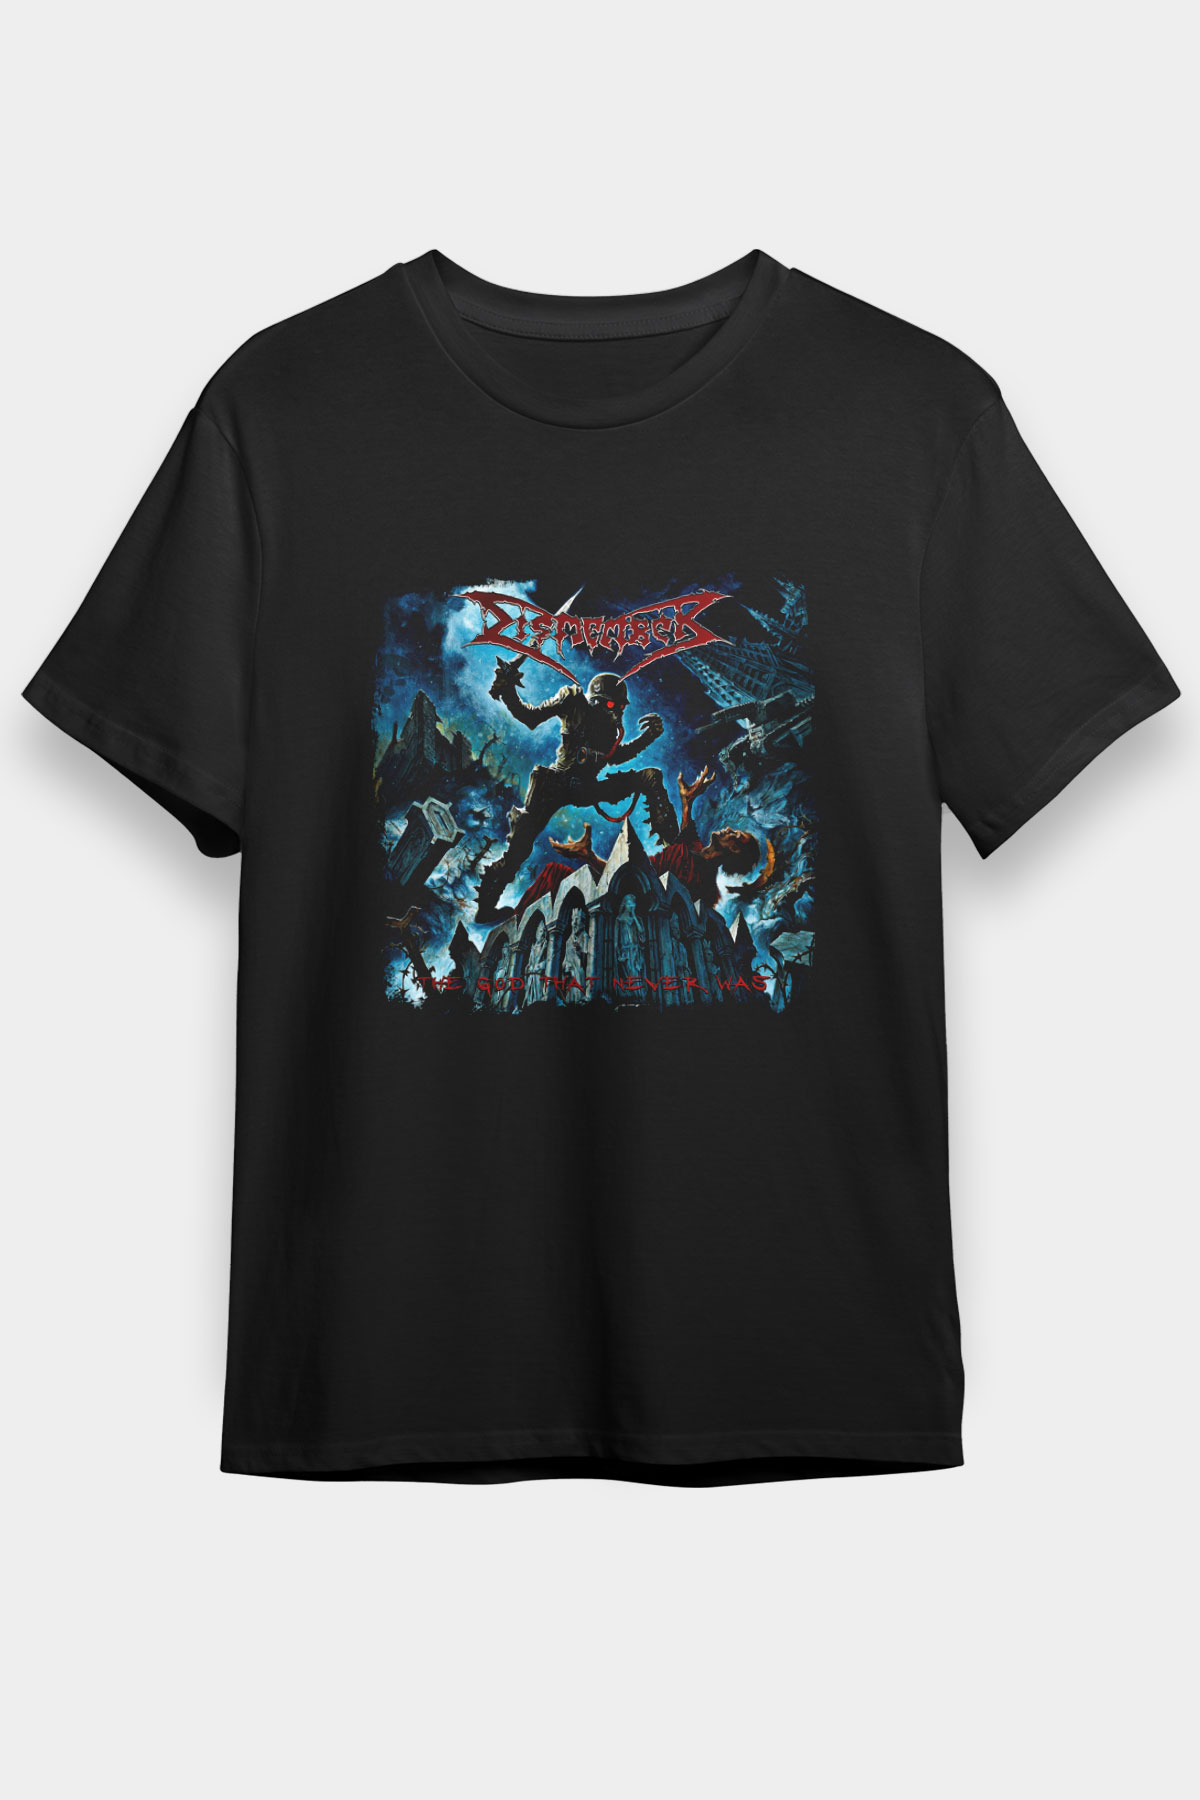 Dismember T shirt, Music Band ,Unisex Tshirt 06